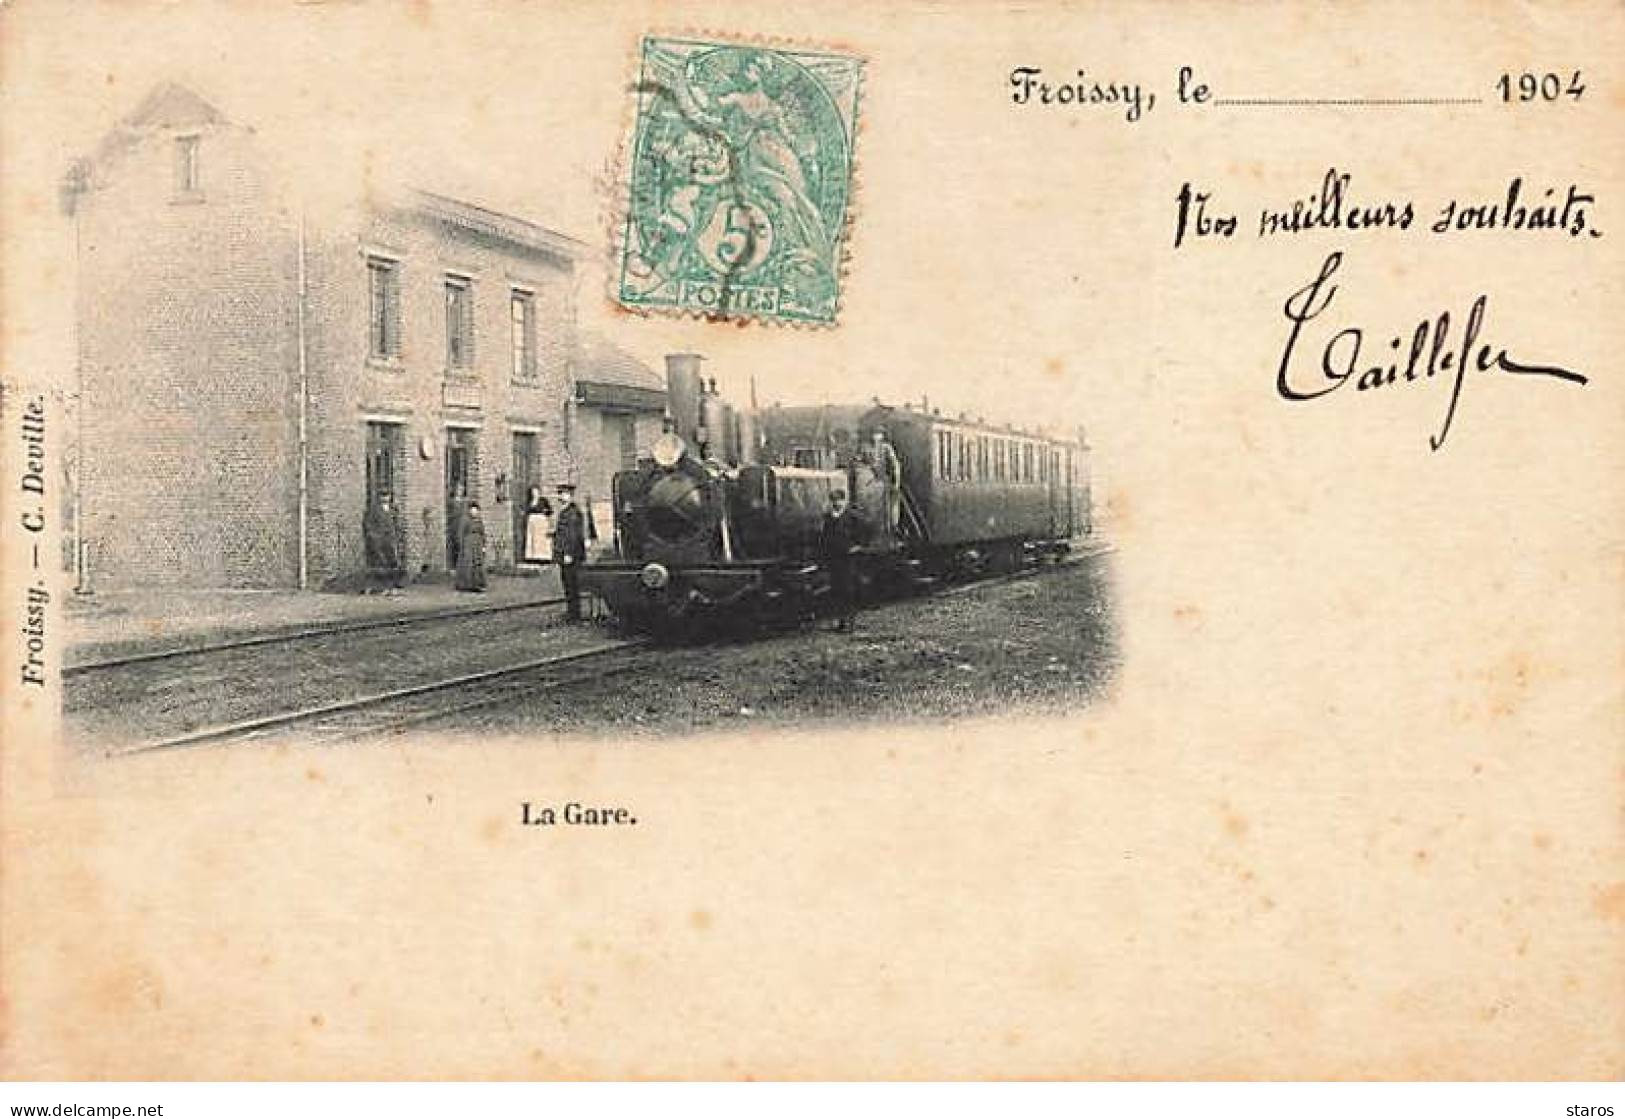 FROISSY - La Gare - Train - Froissy